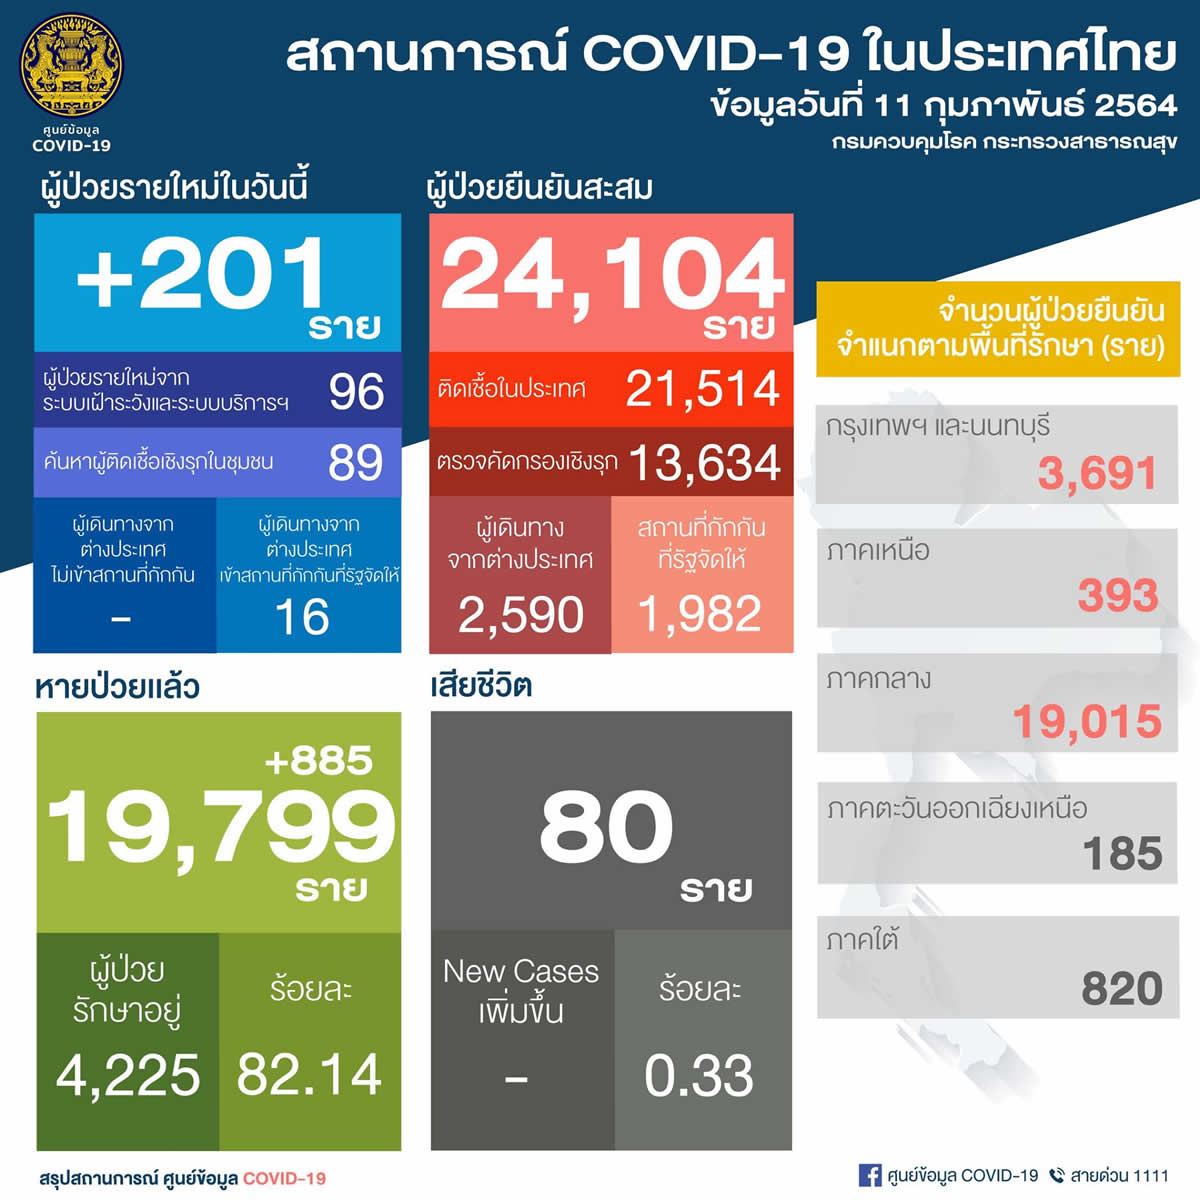 新規タイ国内感染は185人～サムットサコン129人、ターク37、バンコク17人など［2021年2月11日発表］